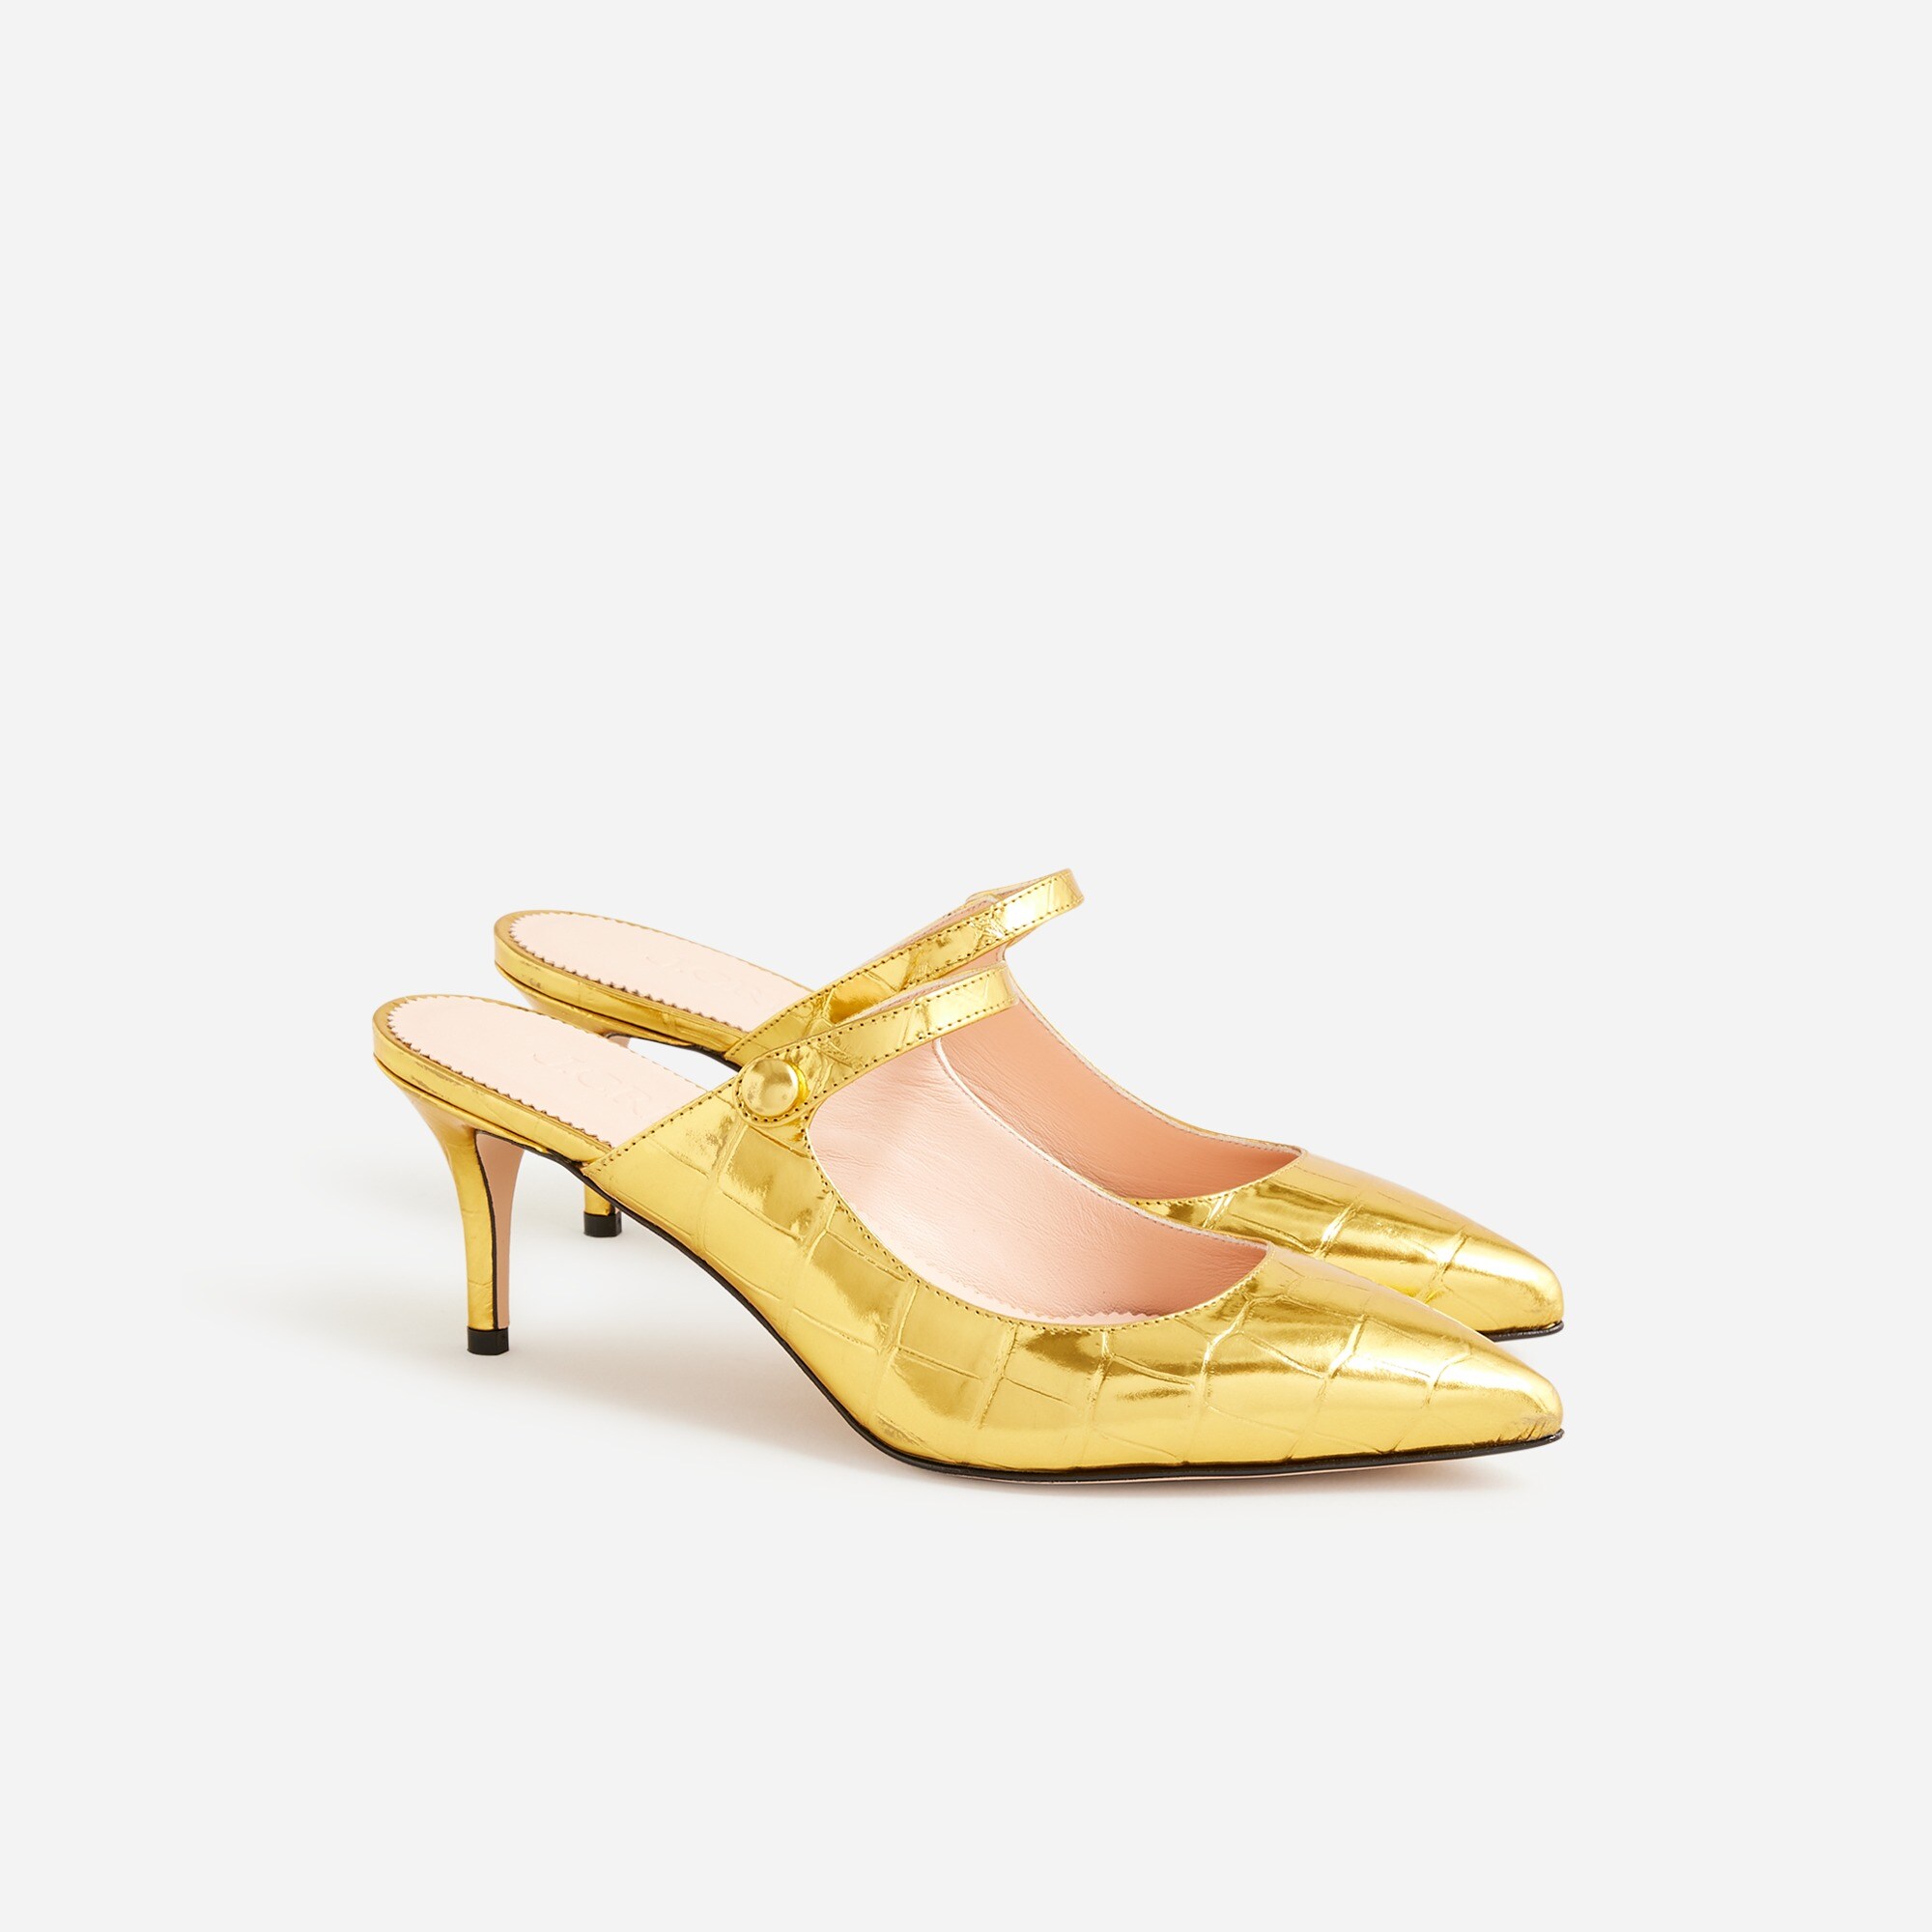  Colette mule heels in metallic croc-embossed leather